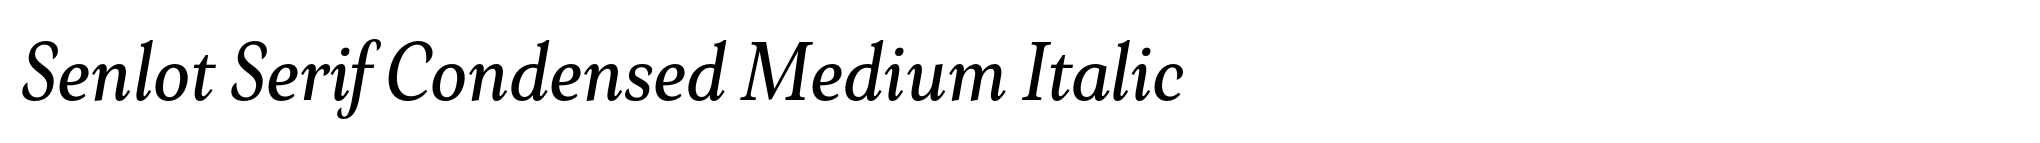 Senlot Serif Condensed Medium Italic image